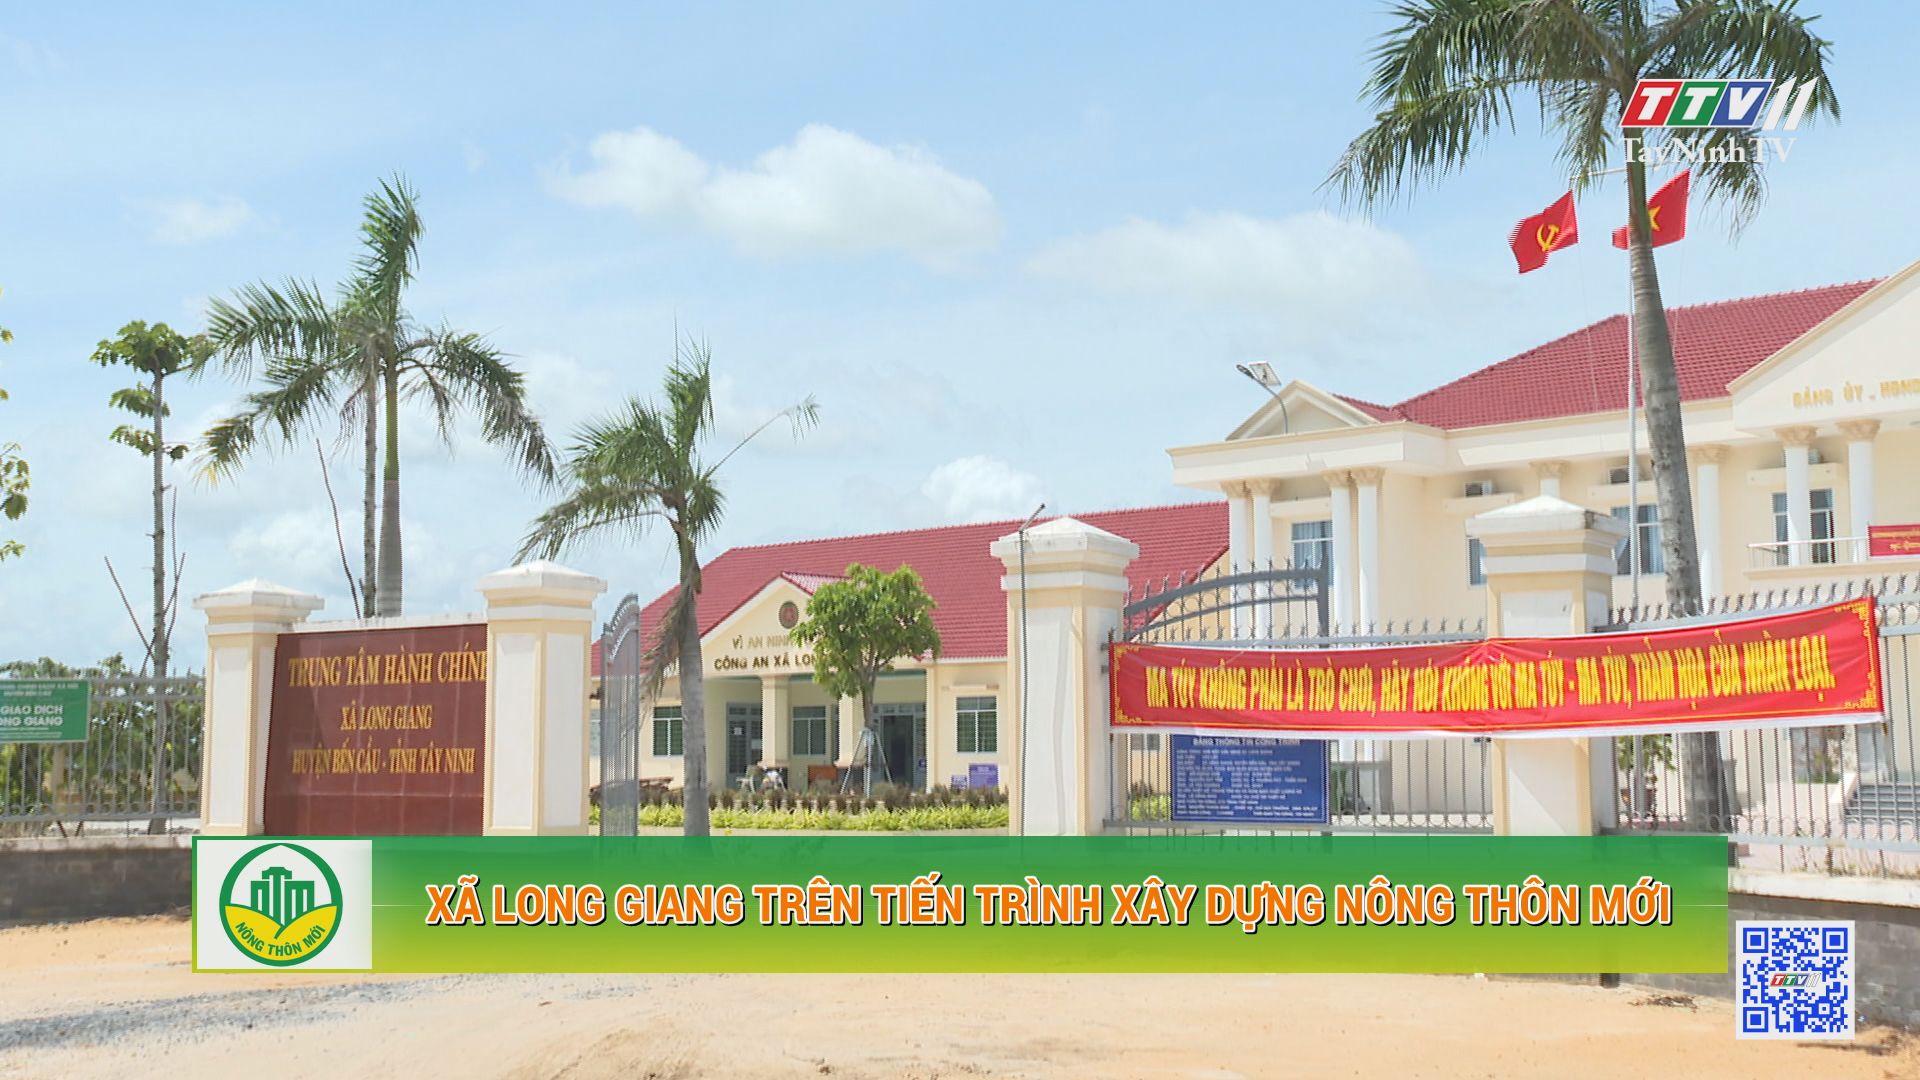 Xã Long Giang trên tiến trình xây dựng nông thôn mới | Tây Ninh xây dựng nông thôn mới | TayNinhTV